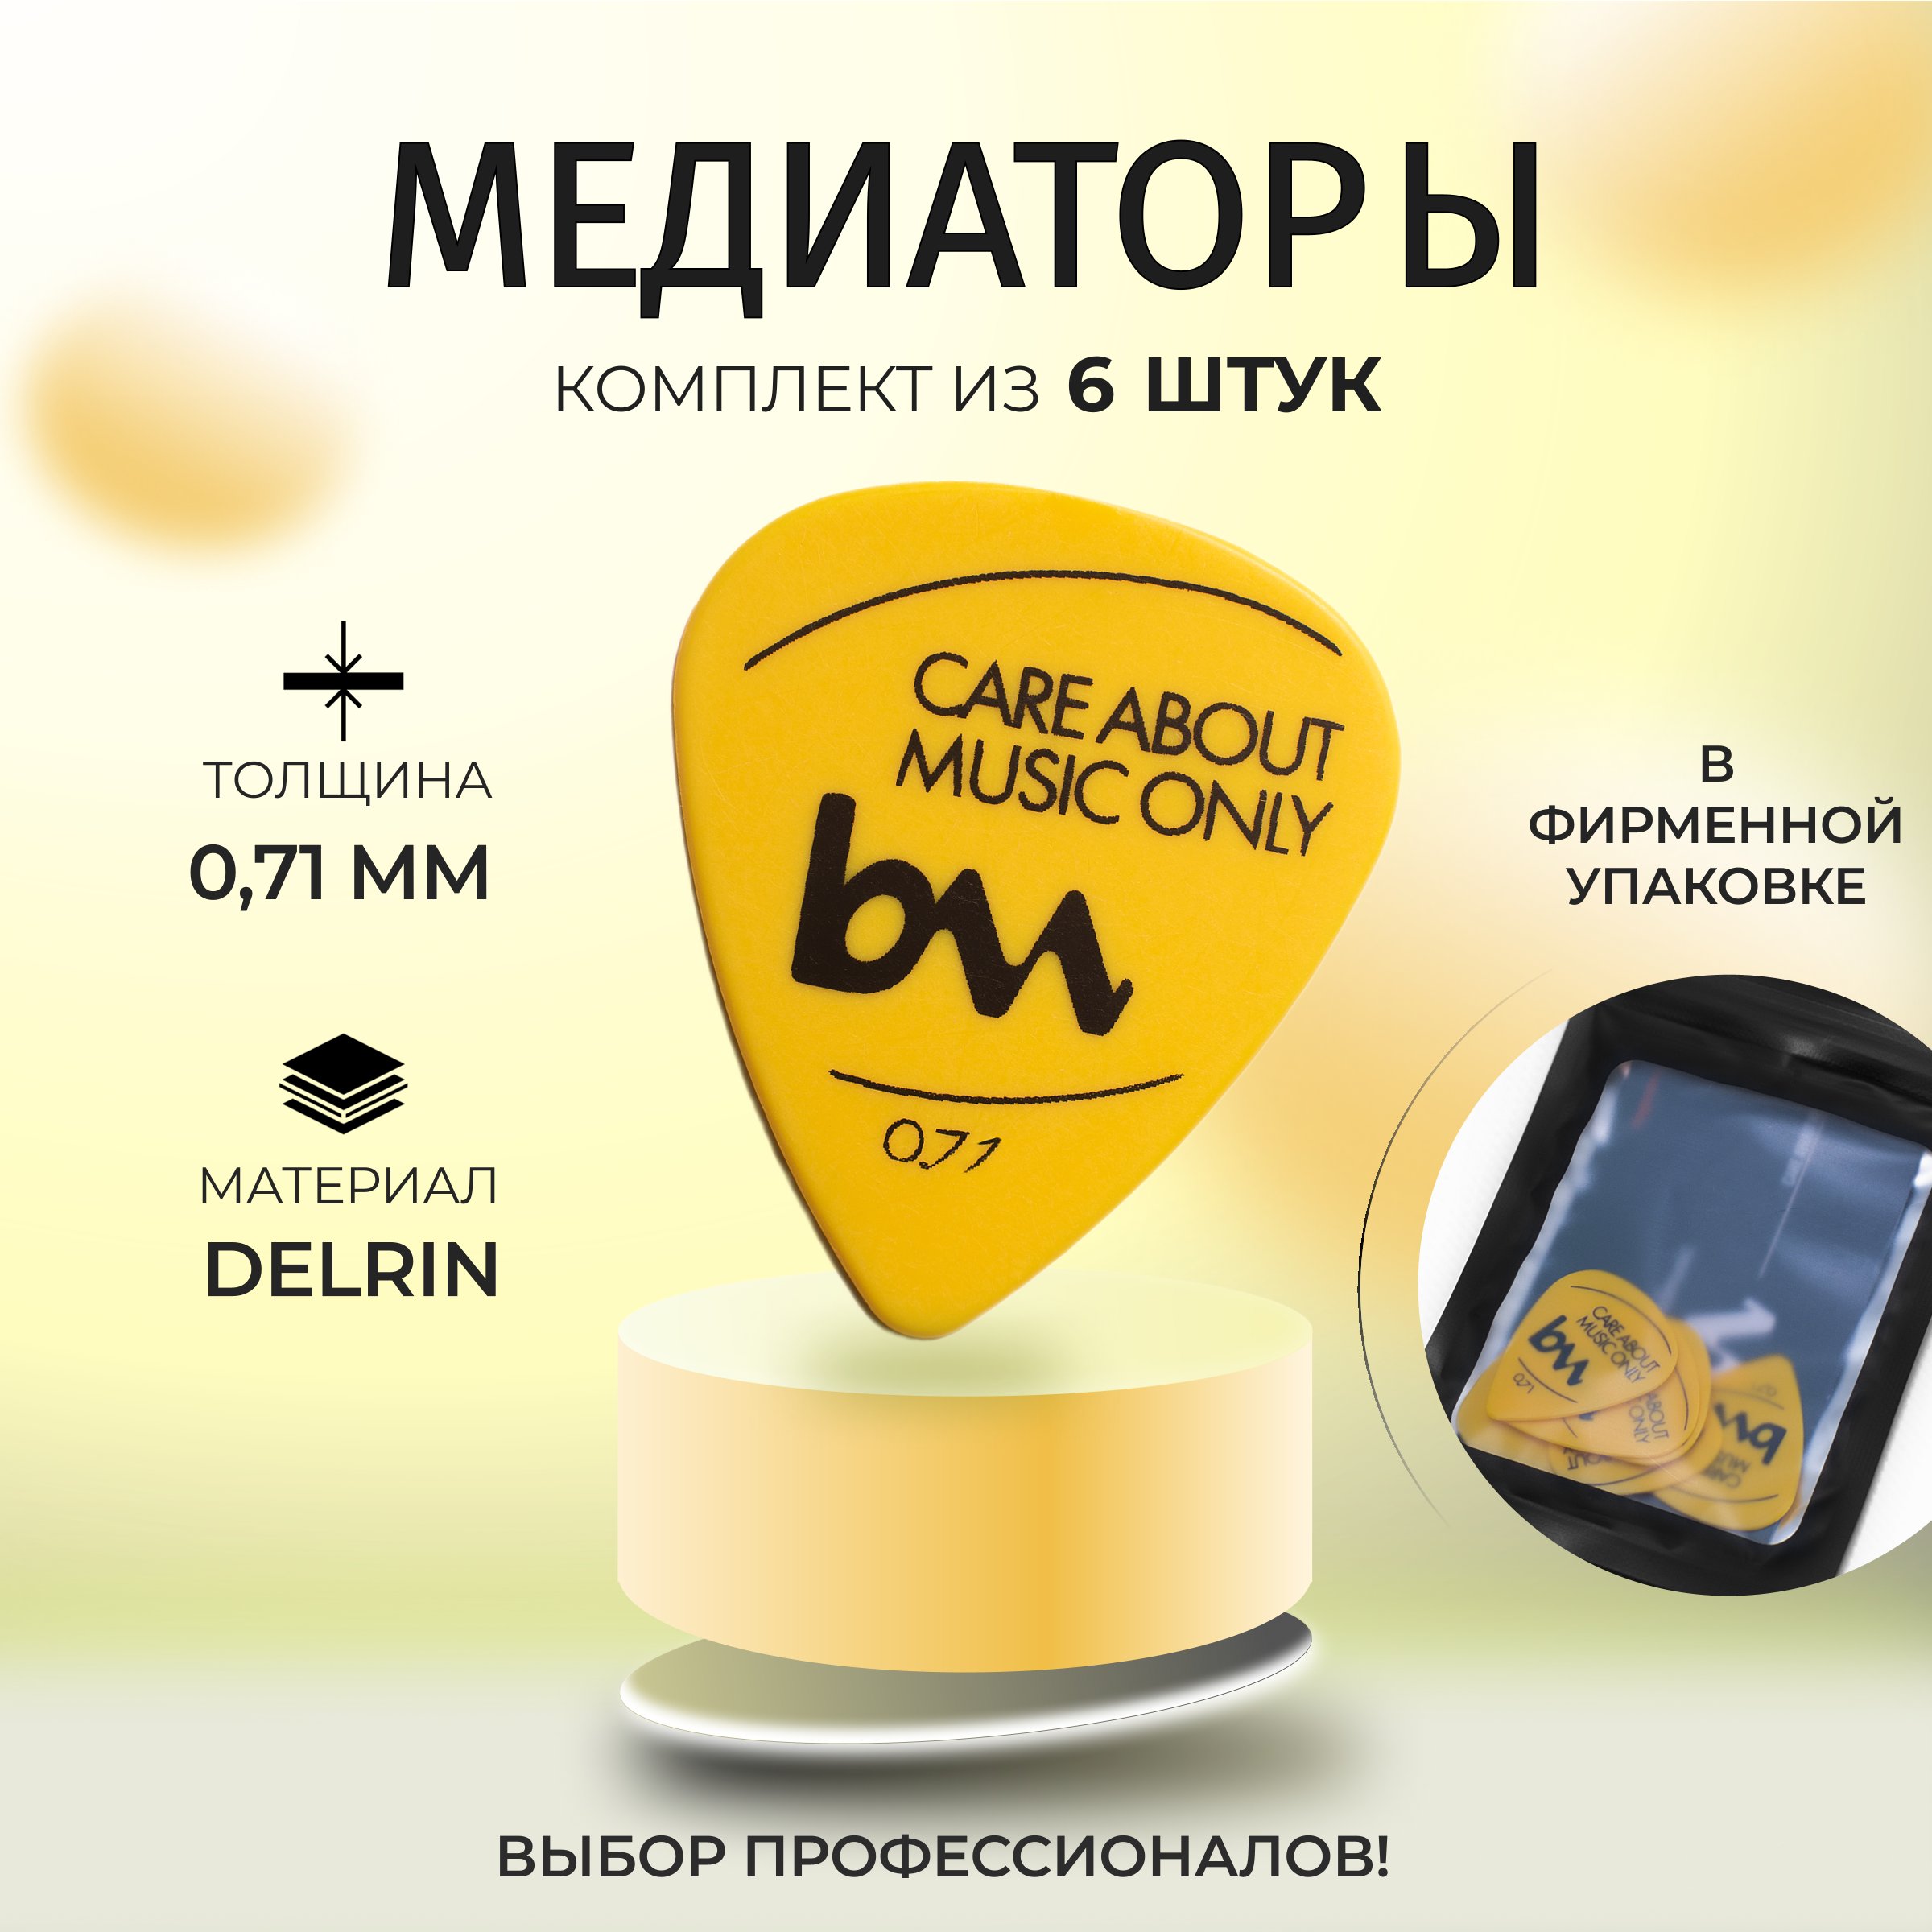 

Медиаторы Bagandmusic AKSS14 0,71 мм желтые 6 шт, Желтый, mediator